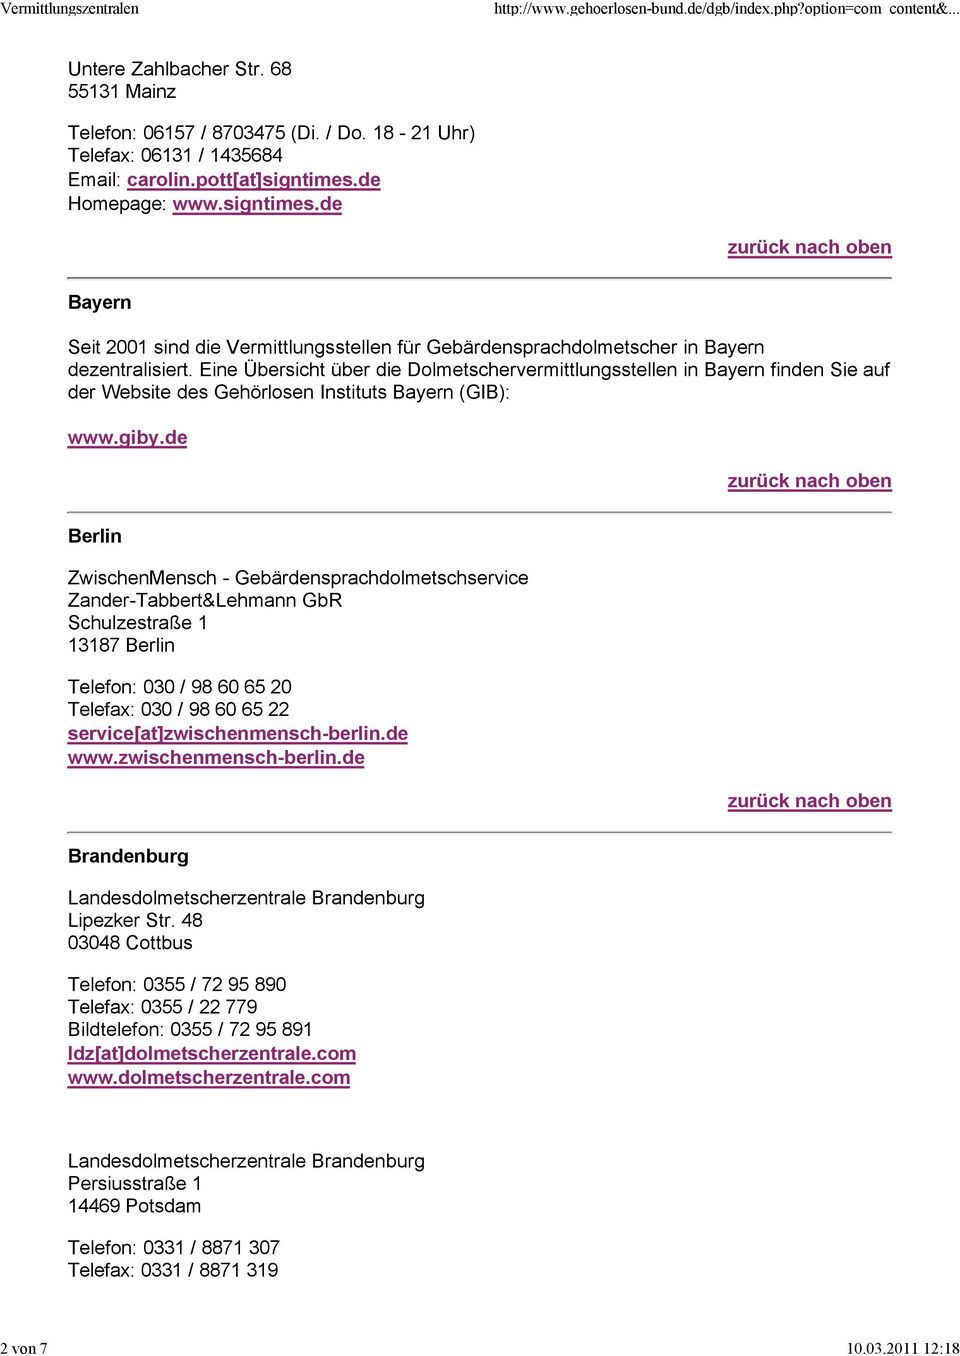 Eine Übersicht über die Dolmetschervermittlungsstellen in Bayern finden Sie auf der Website des Gehörlosen Instituts Bayern (GIB): www.giby.